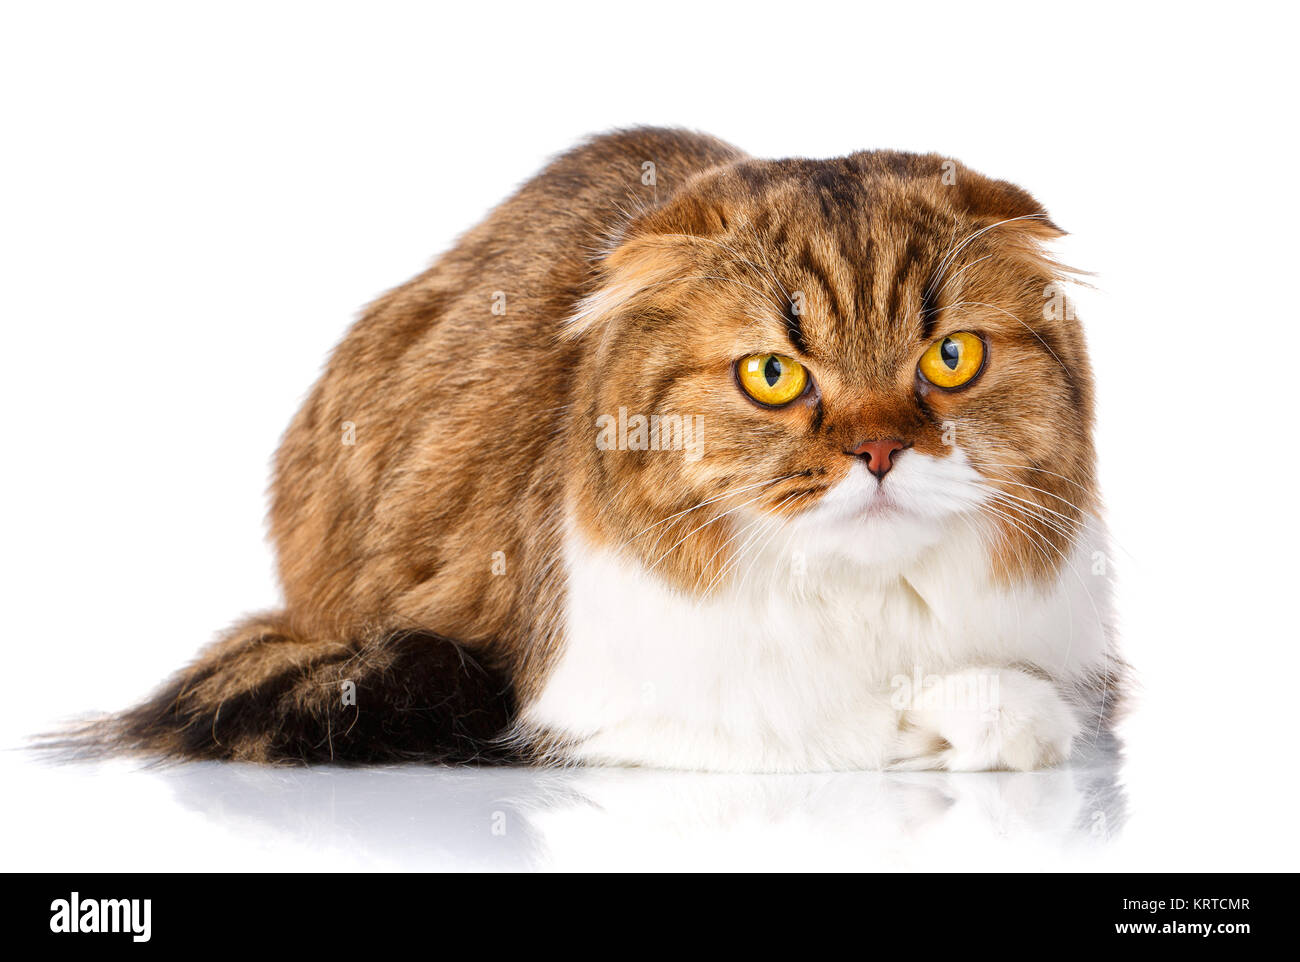 Scottish Fold cat lying on white background Stock Photo